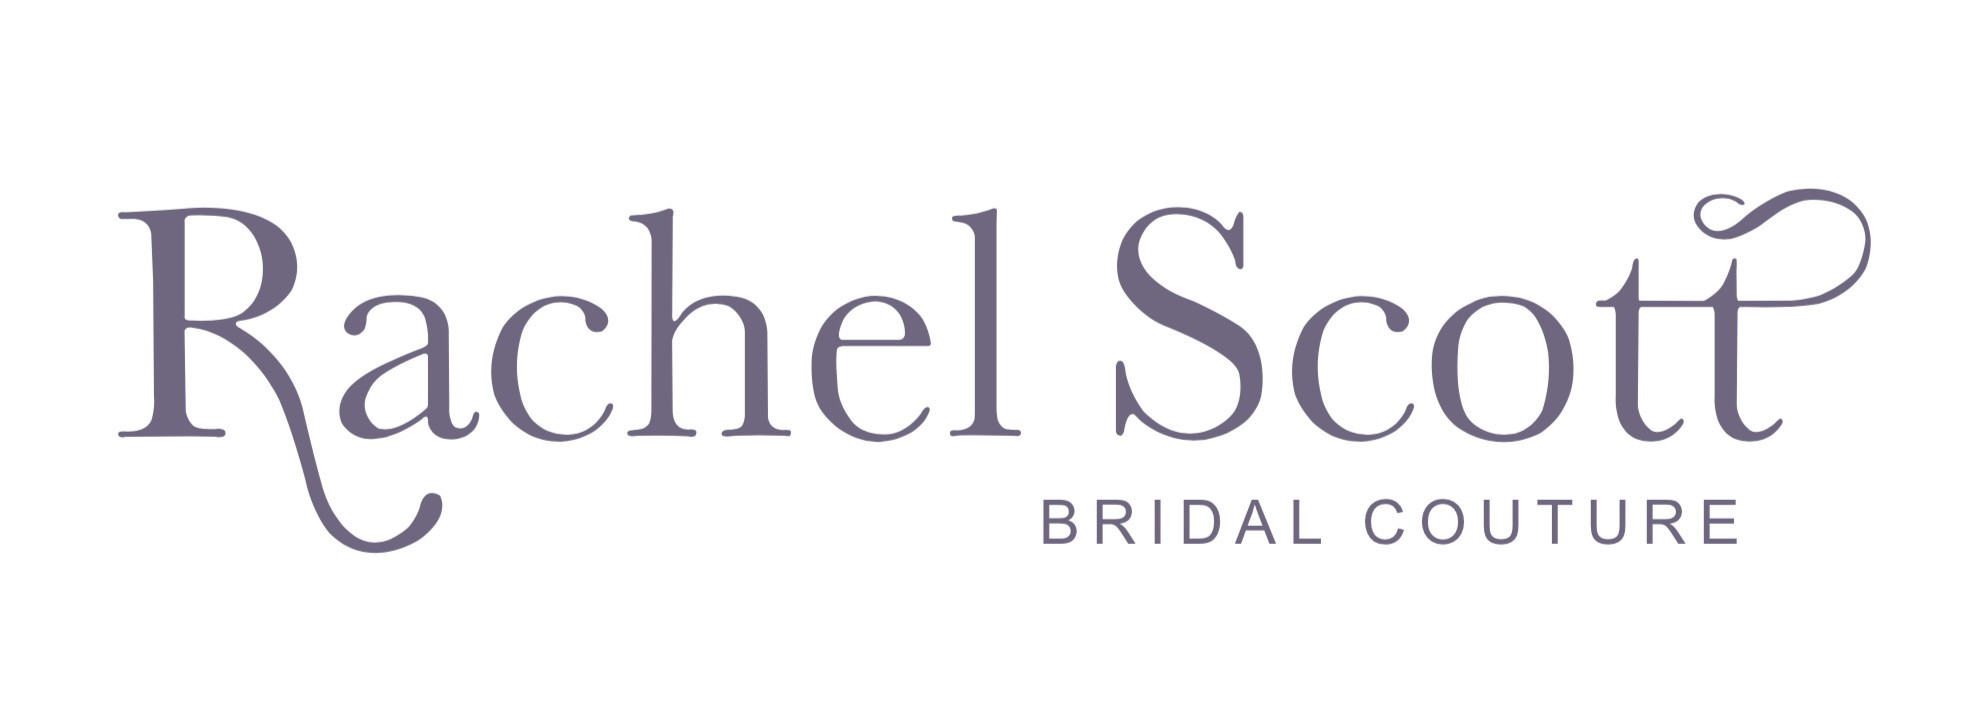 Bridal Couture Logo - Rachel Scott Bridal Couture